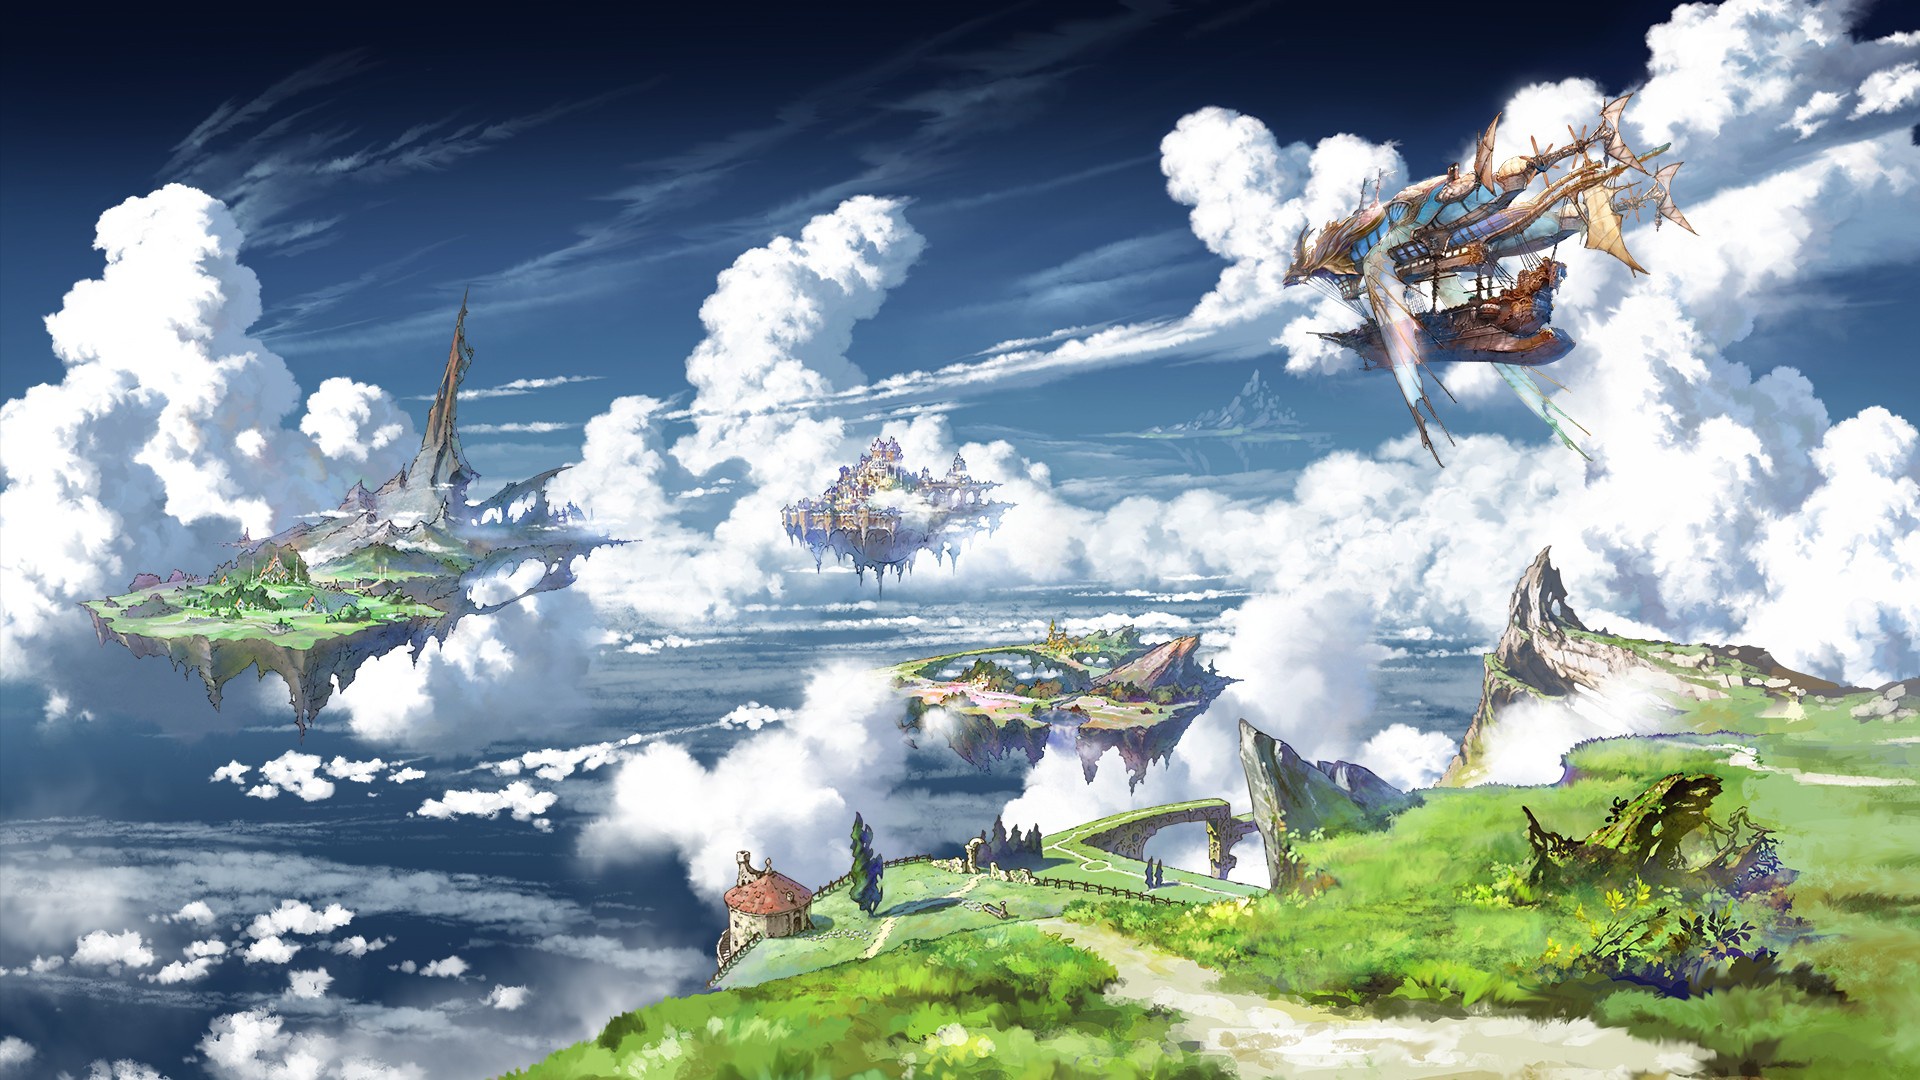 Floating Island | page 2 of 8 - Zerochan Anime Image Board